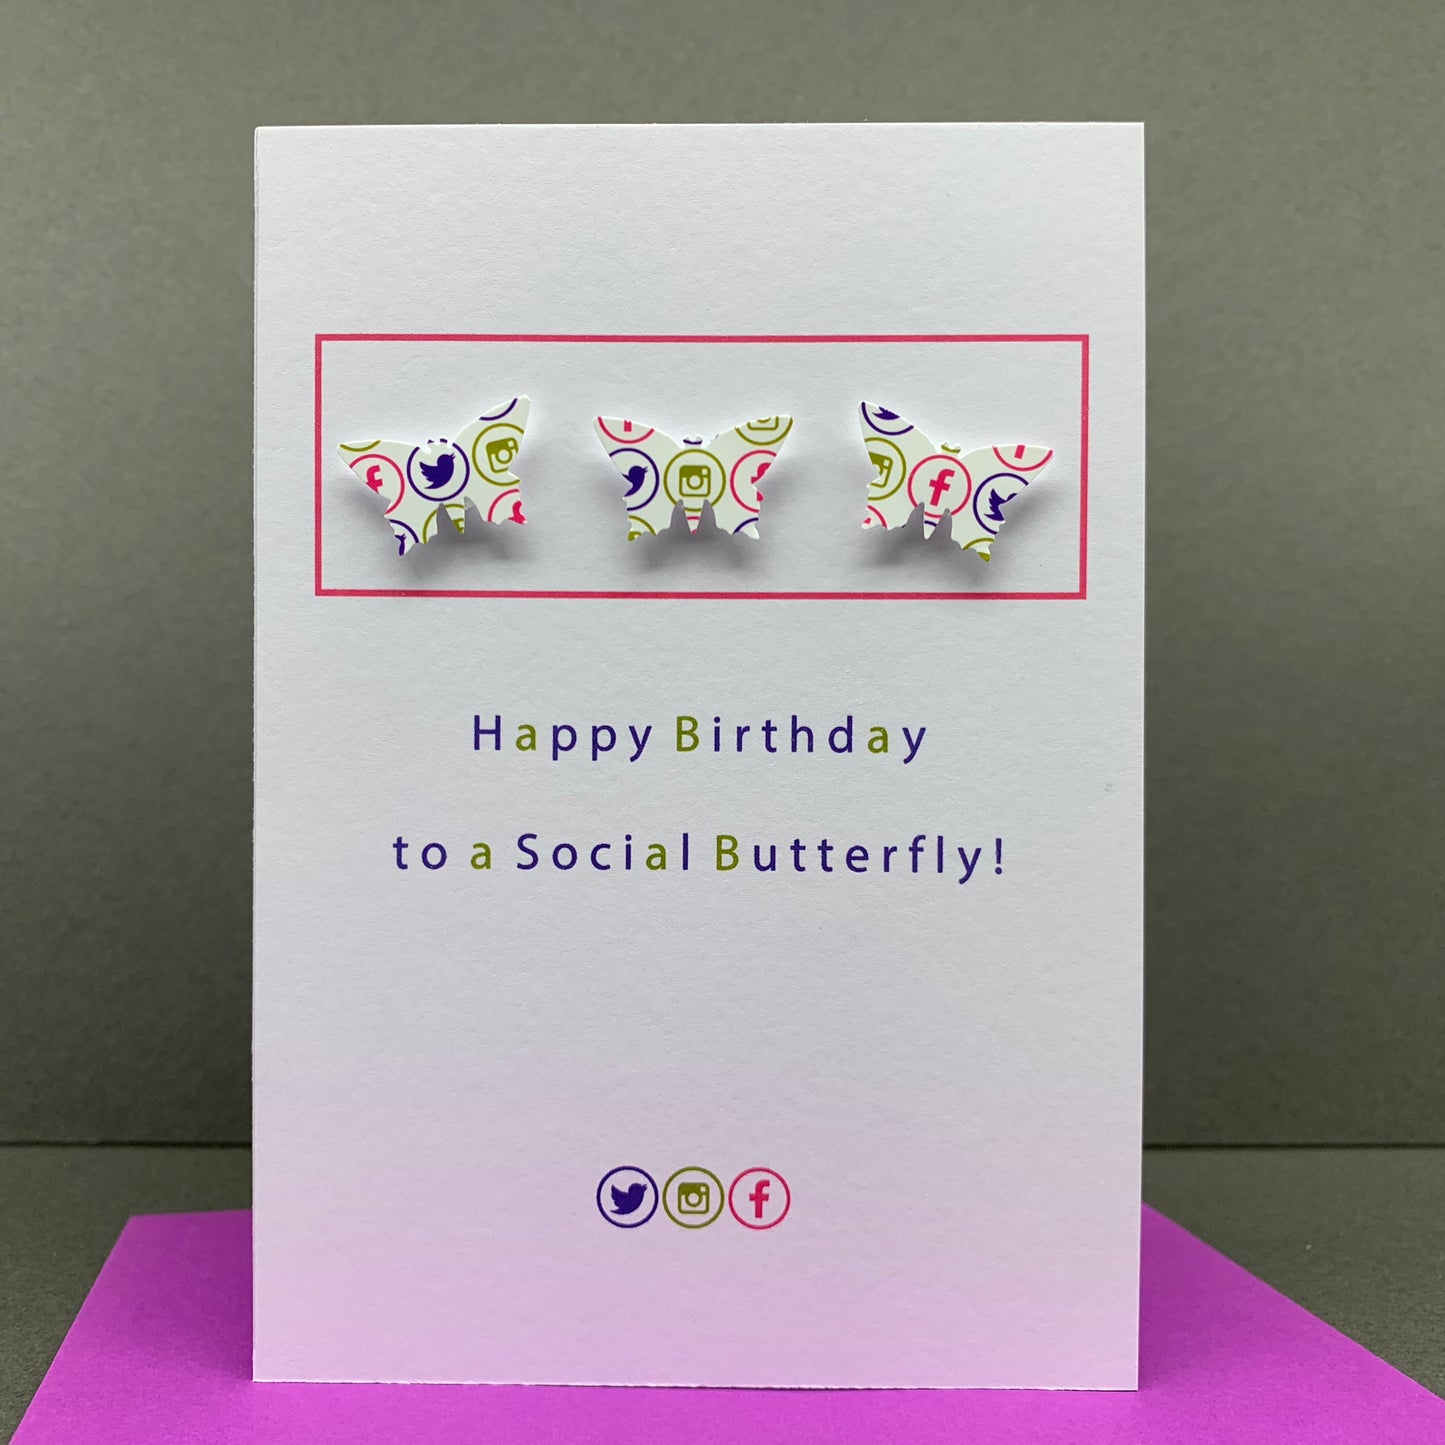 Social Butterfly!